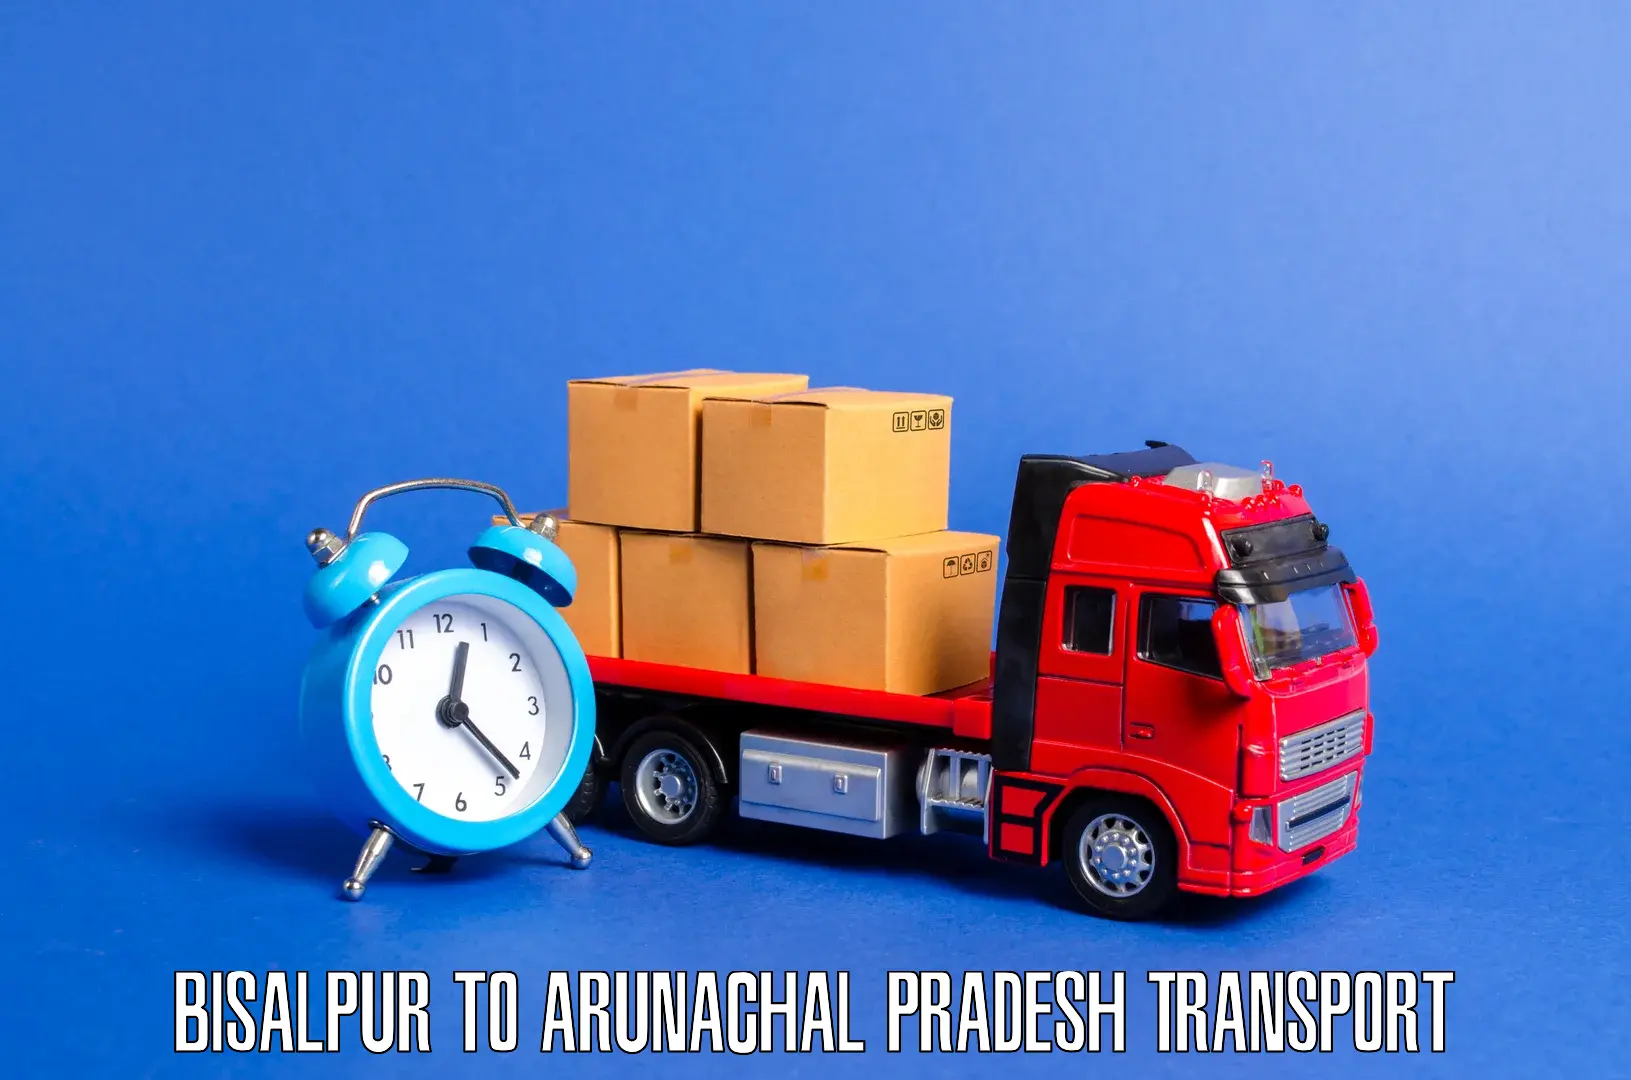 Furniture transport service Bisalpur to Arunachal Pradesh